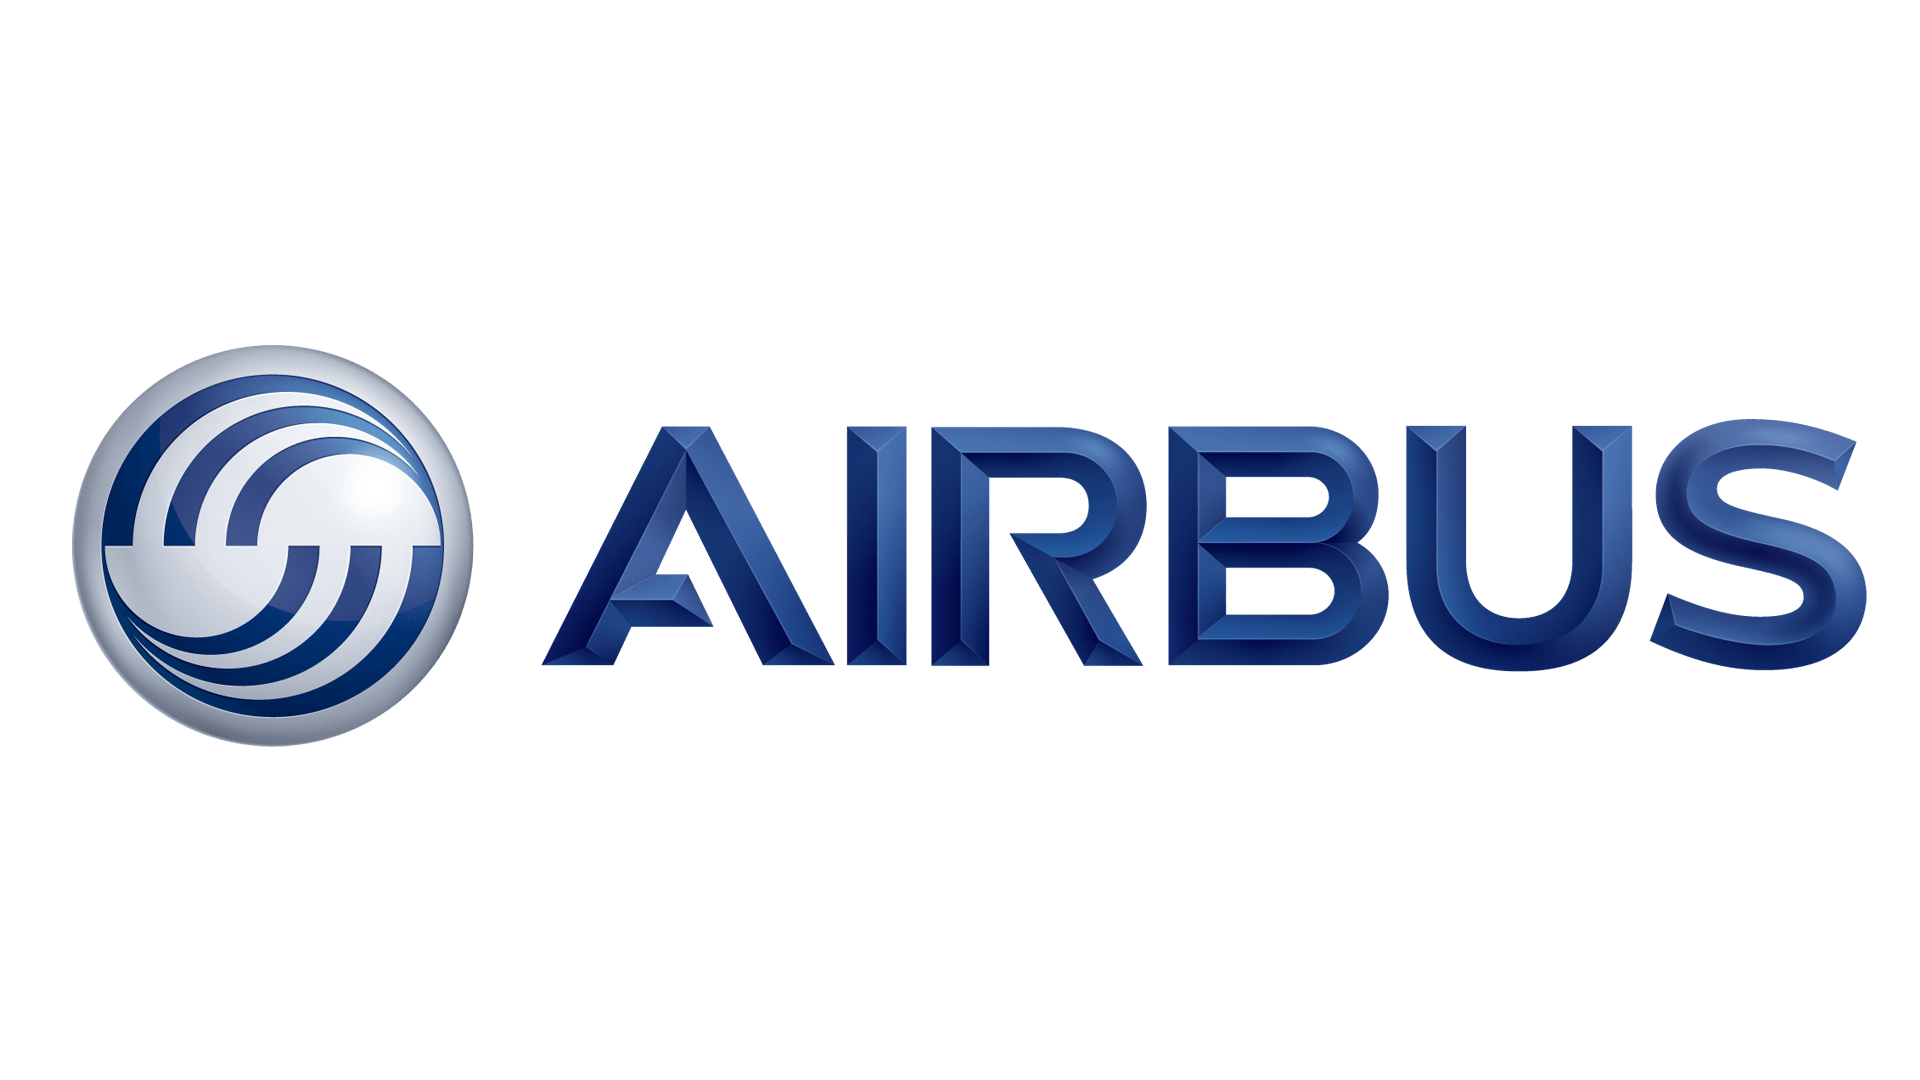 Історія та значення логотипу Airbus, еволюція, символ Airbus